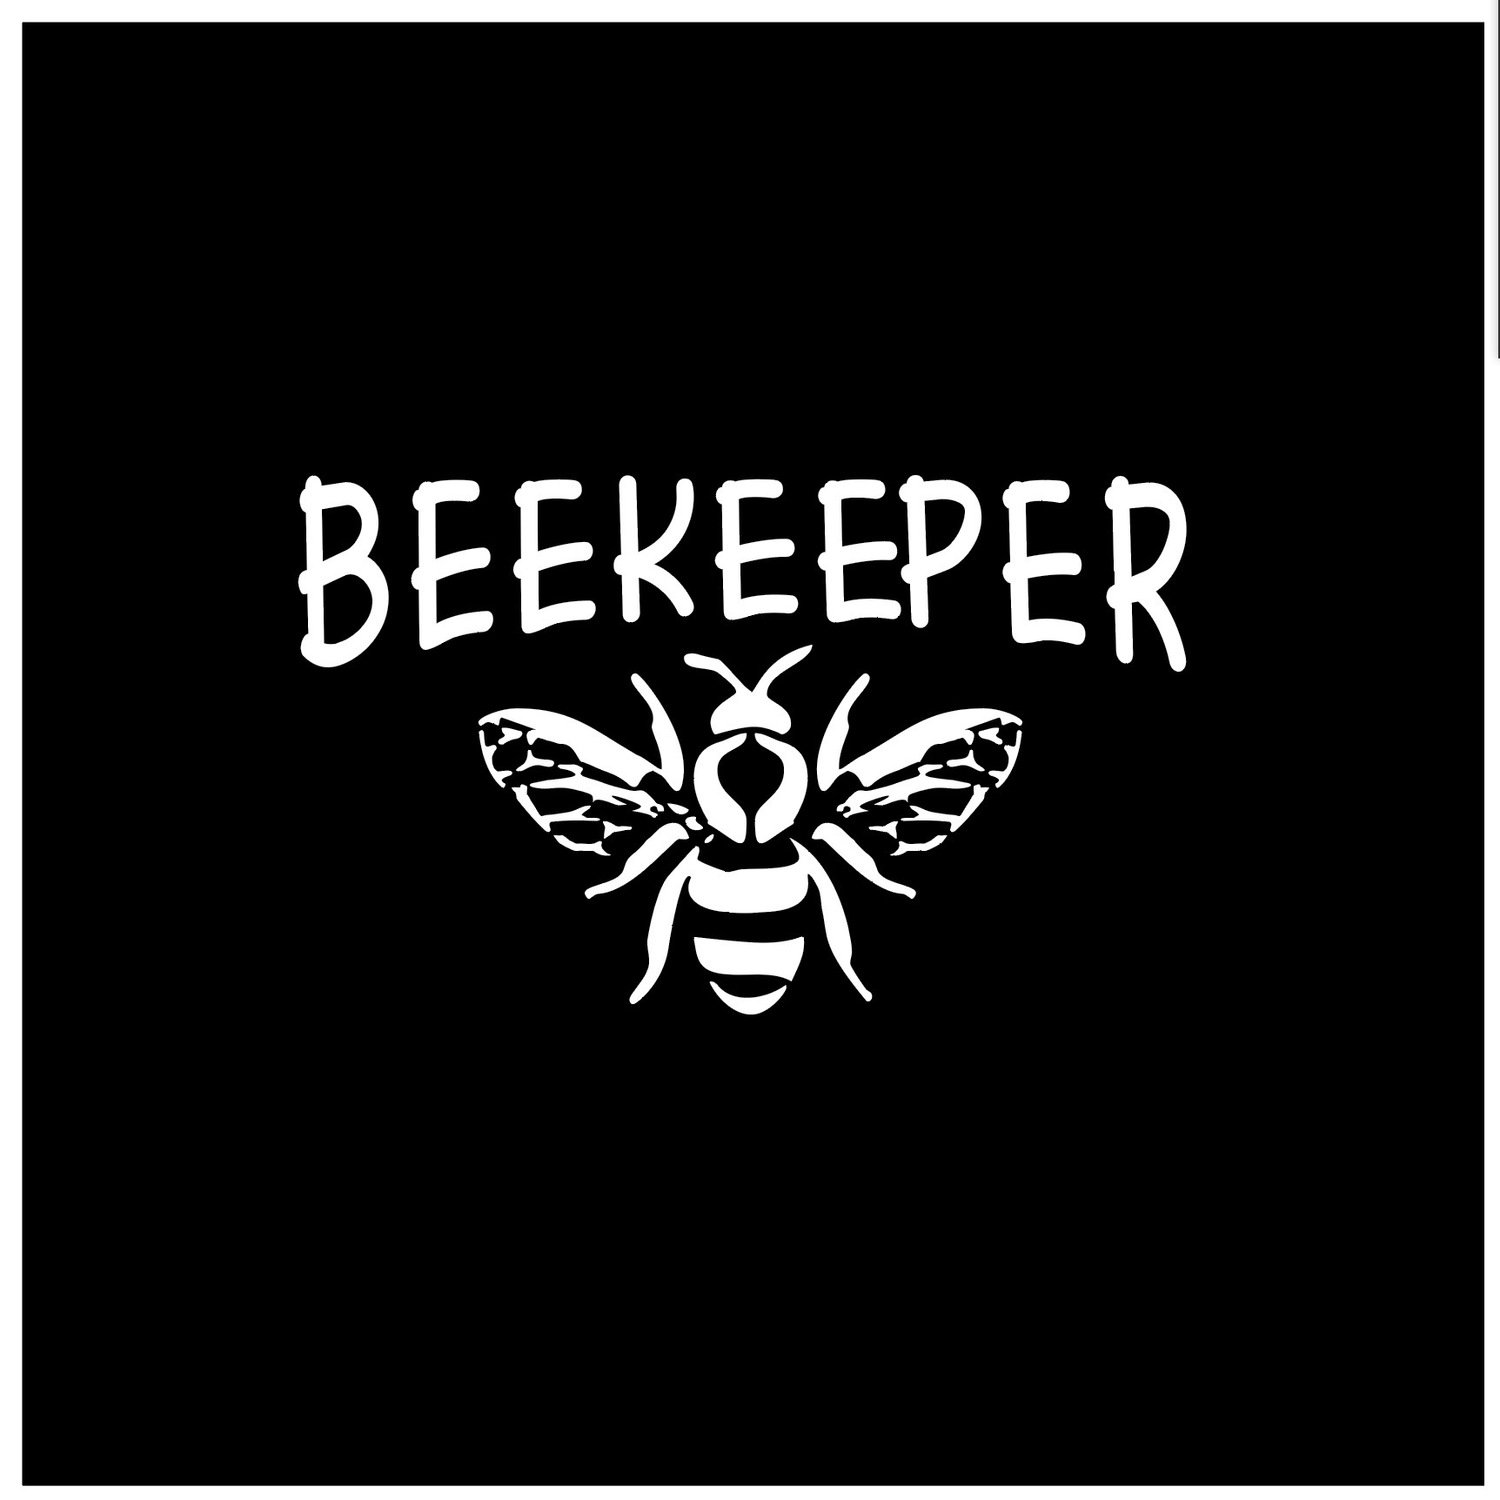 BEEKEEPER DECAL - BEE